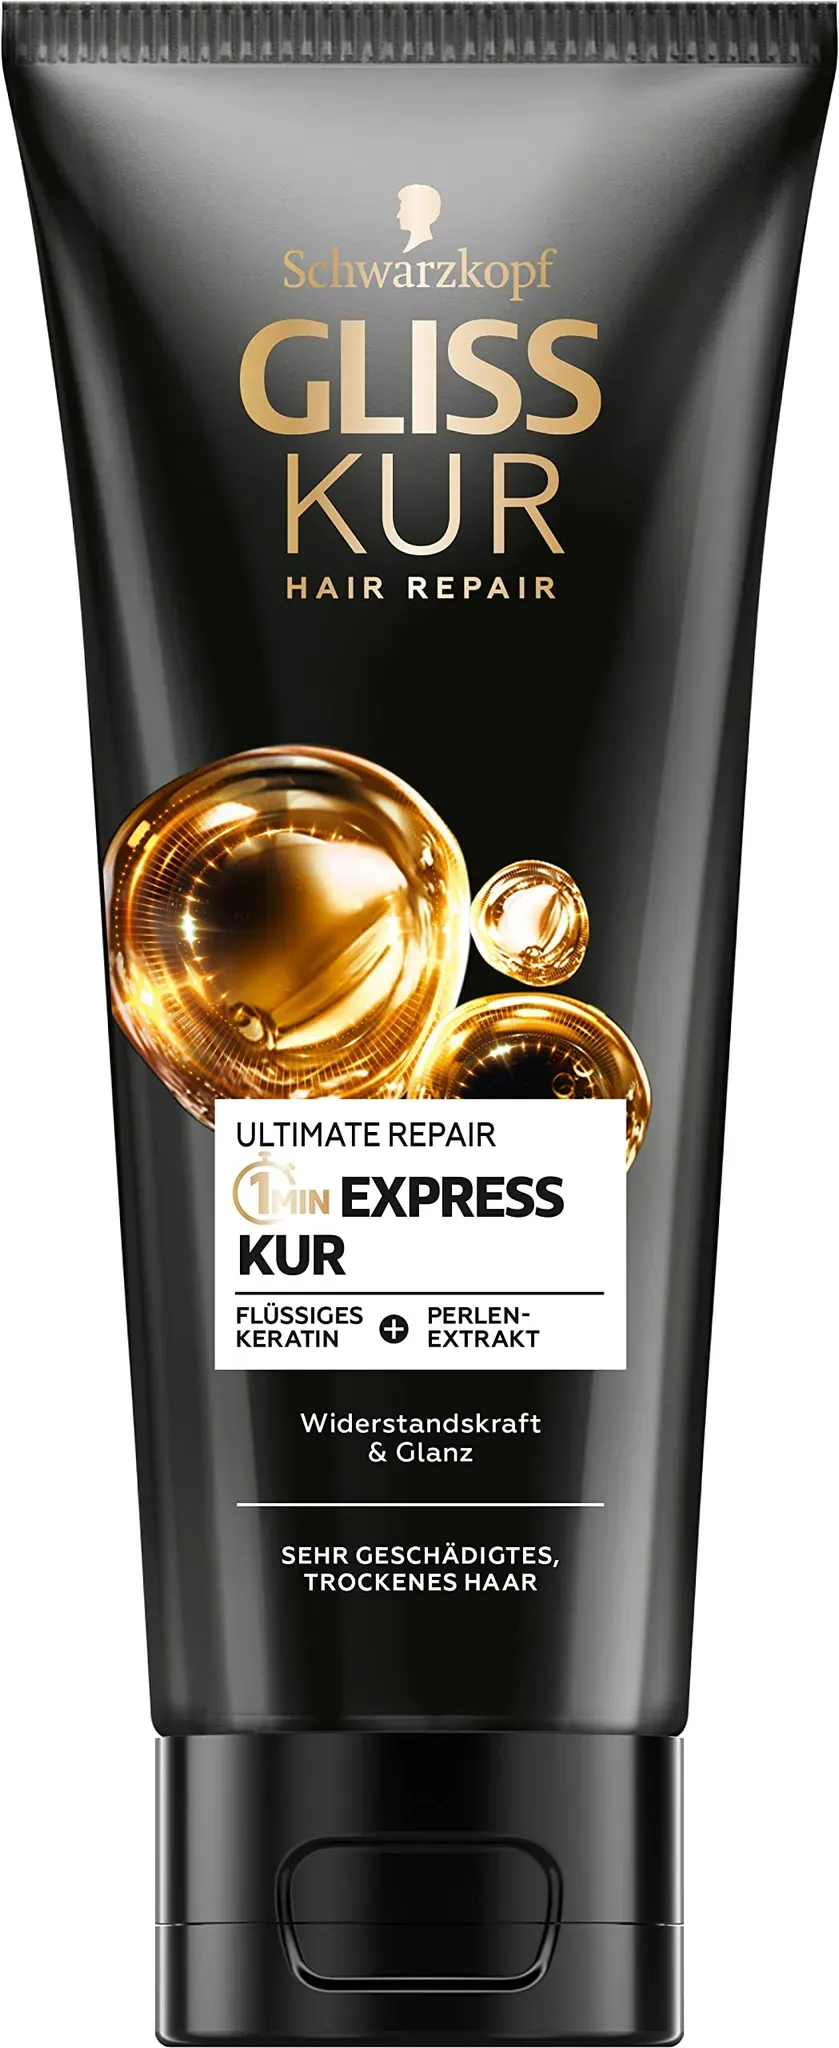 Gliss Kur 1-Minute Express Kur Ultimate Repair (200 ml), Haarkur mit Keratin für extrem geschädigtes Haar, schon nach 1 Minute wirksam